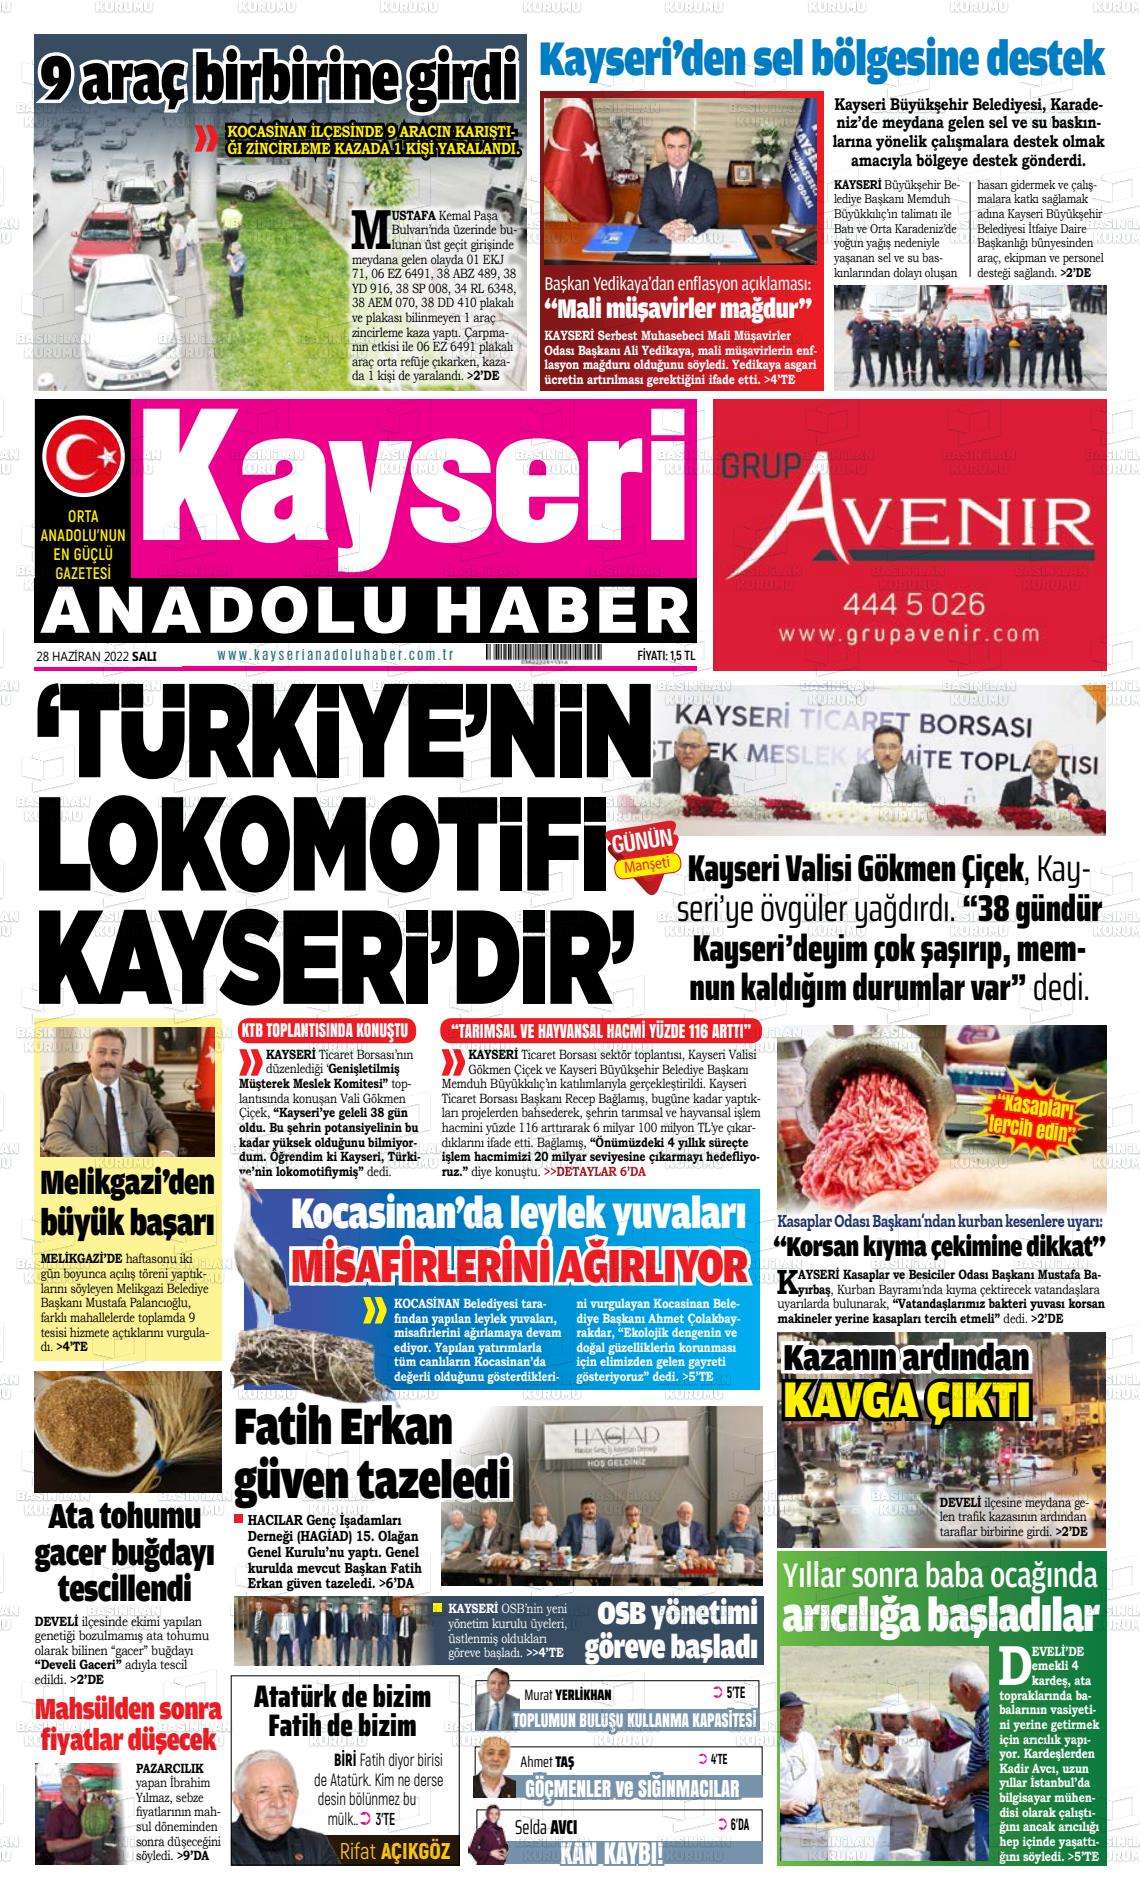 28 Haziran 2022 Kayseri Anadolu Haber Gazete Manşeti